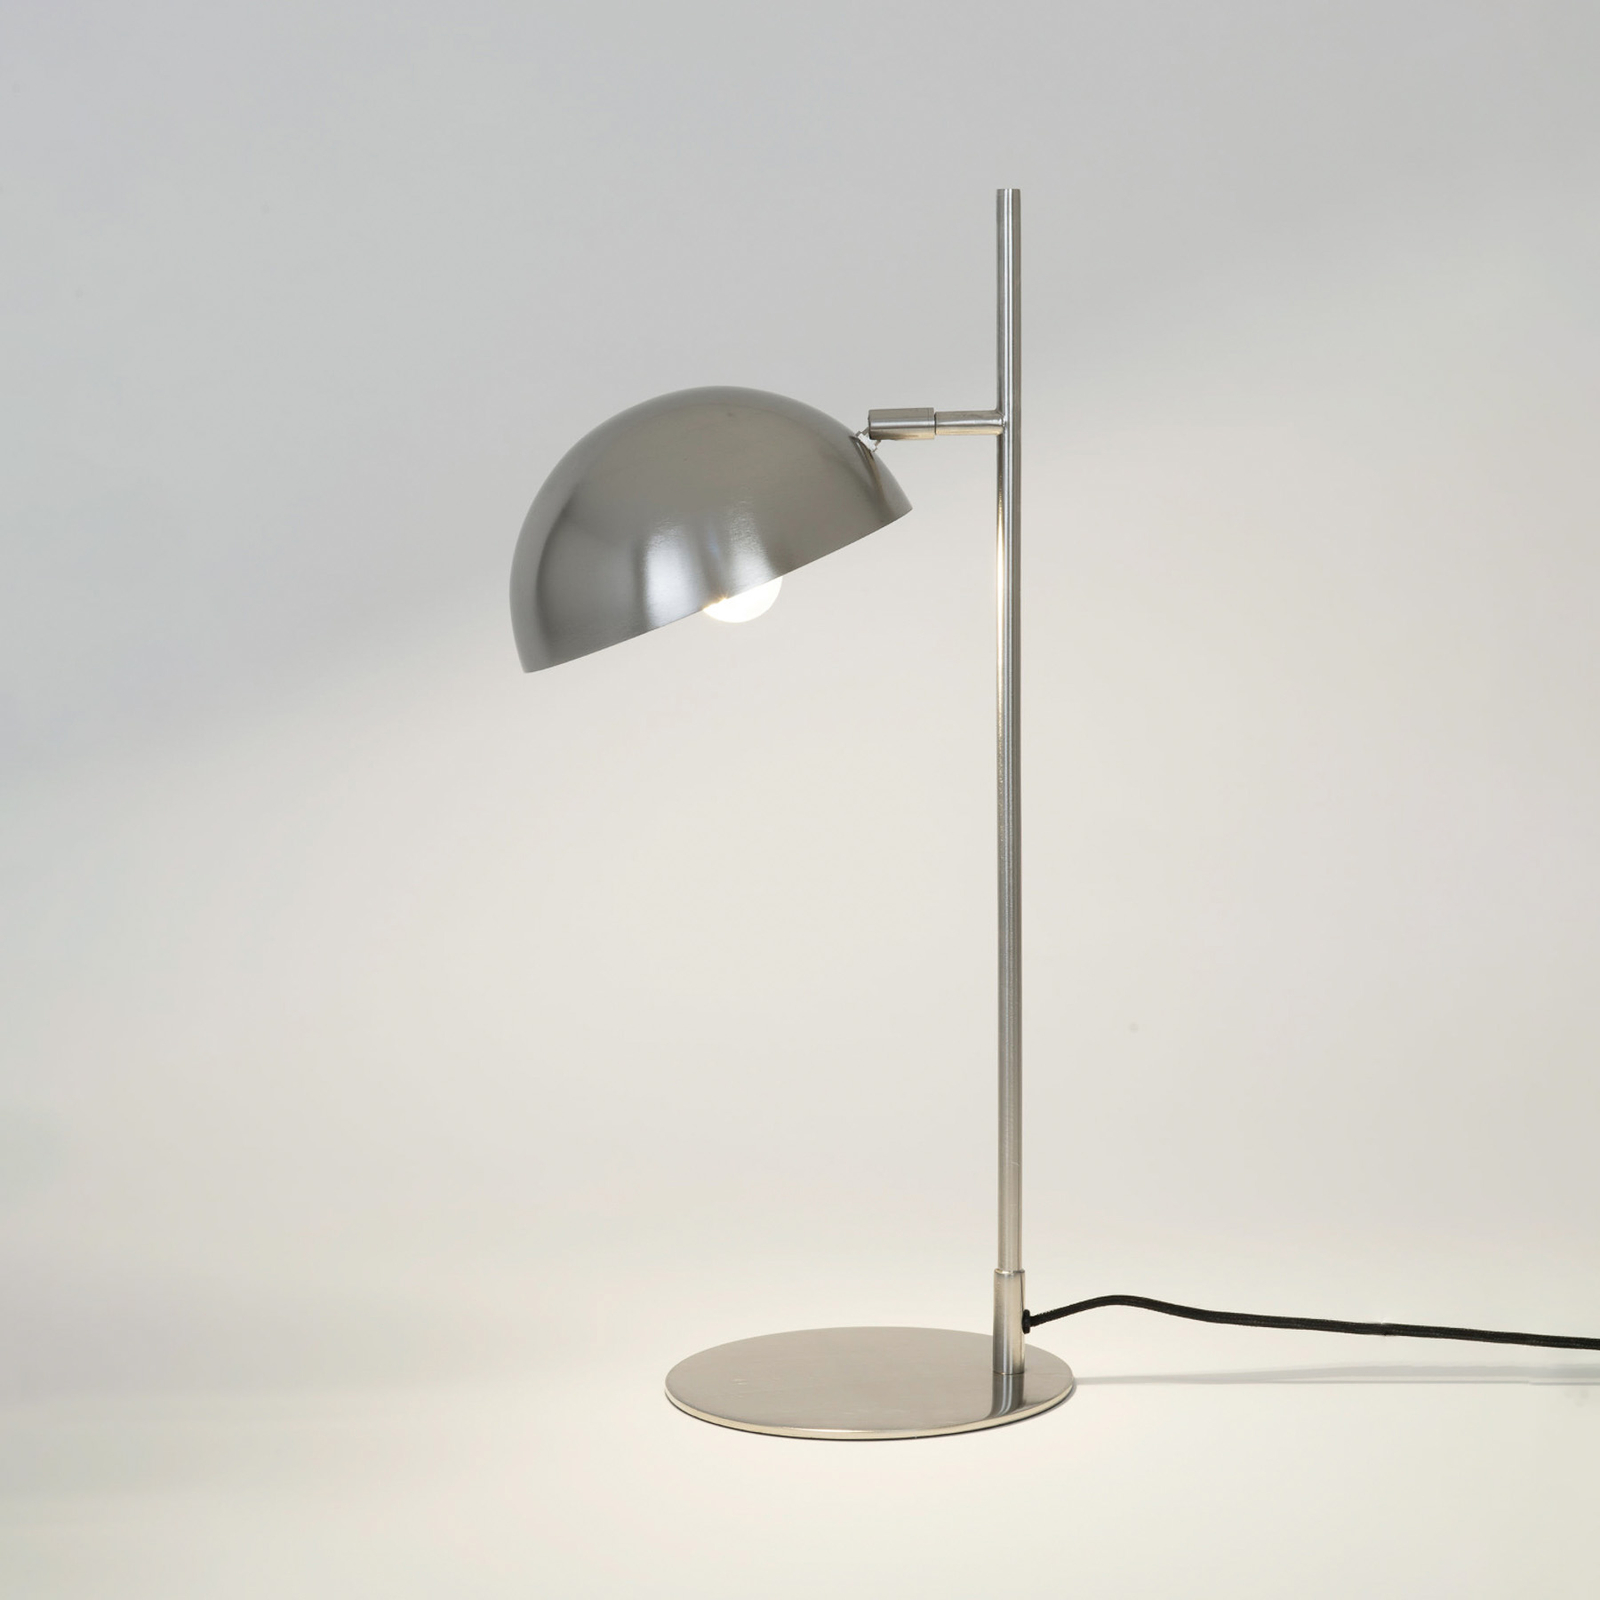 Stolní lampa Miro, stříbrná barva, výška 58 cm, železo/mosaz